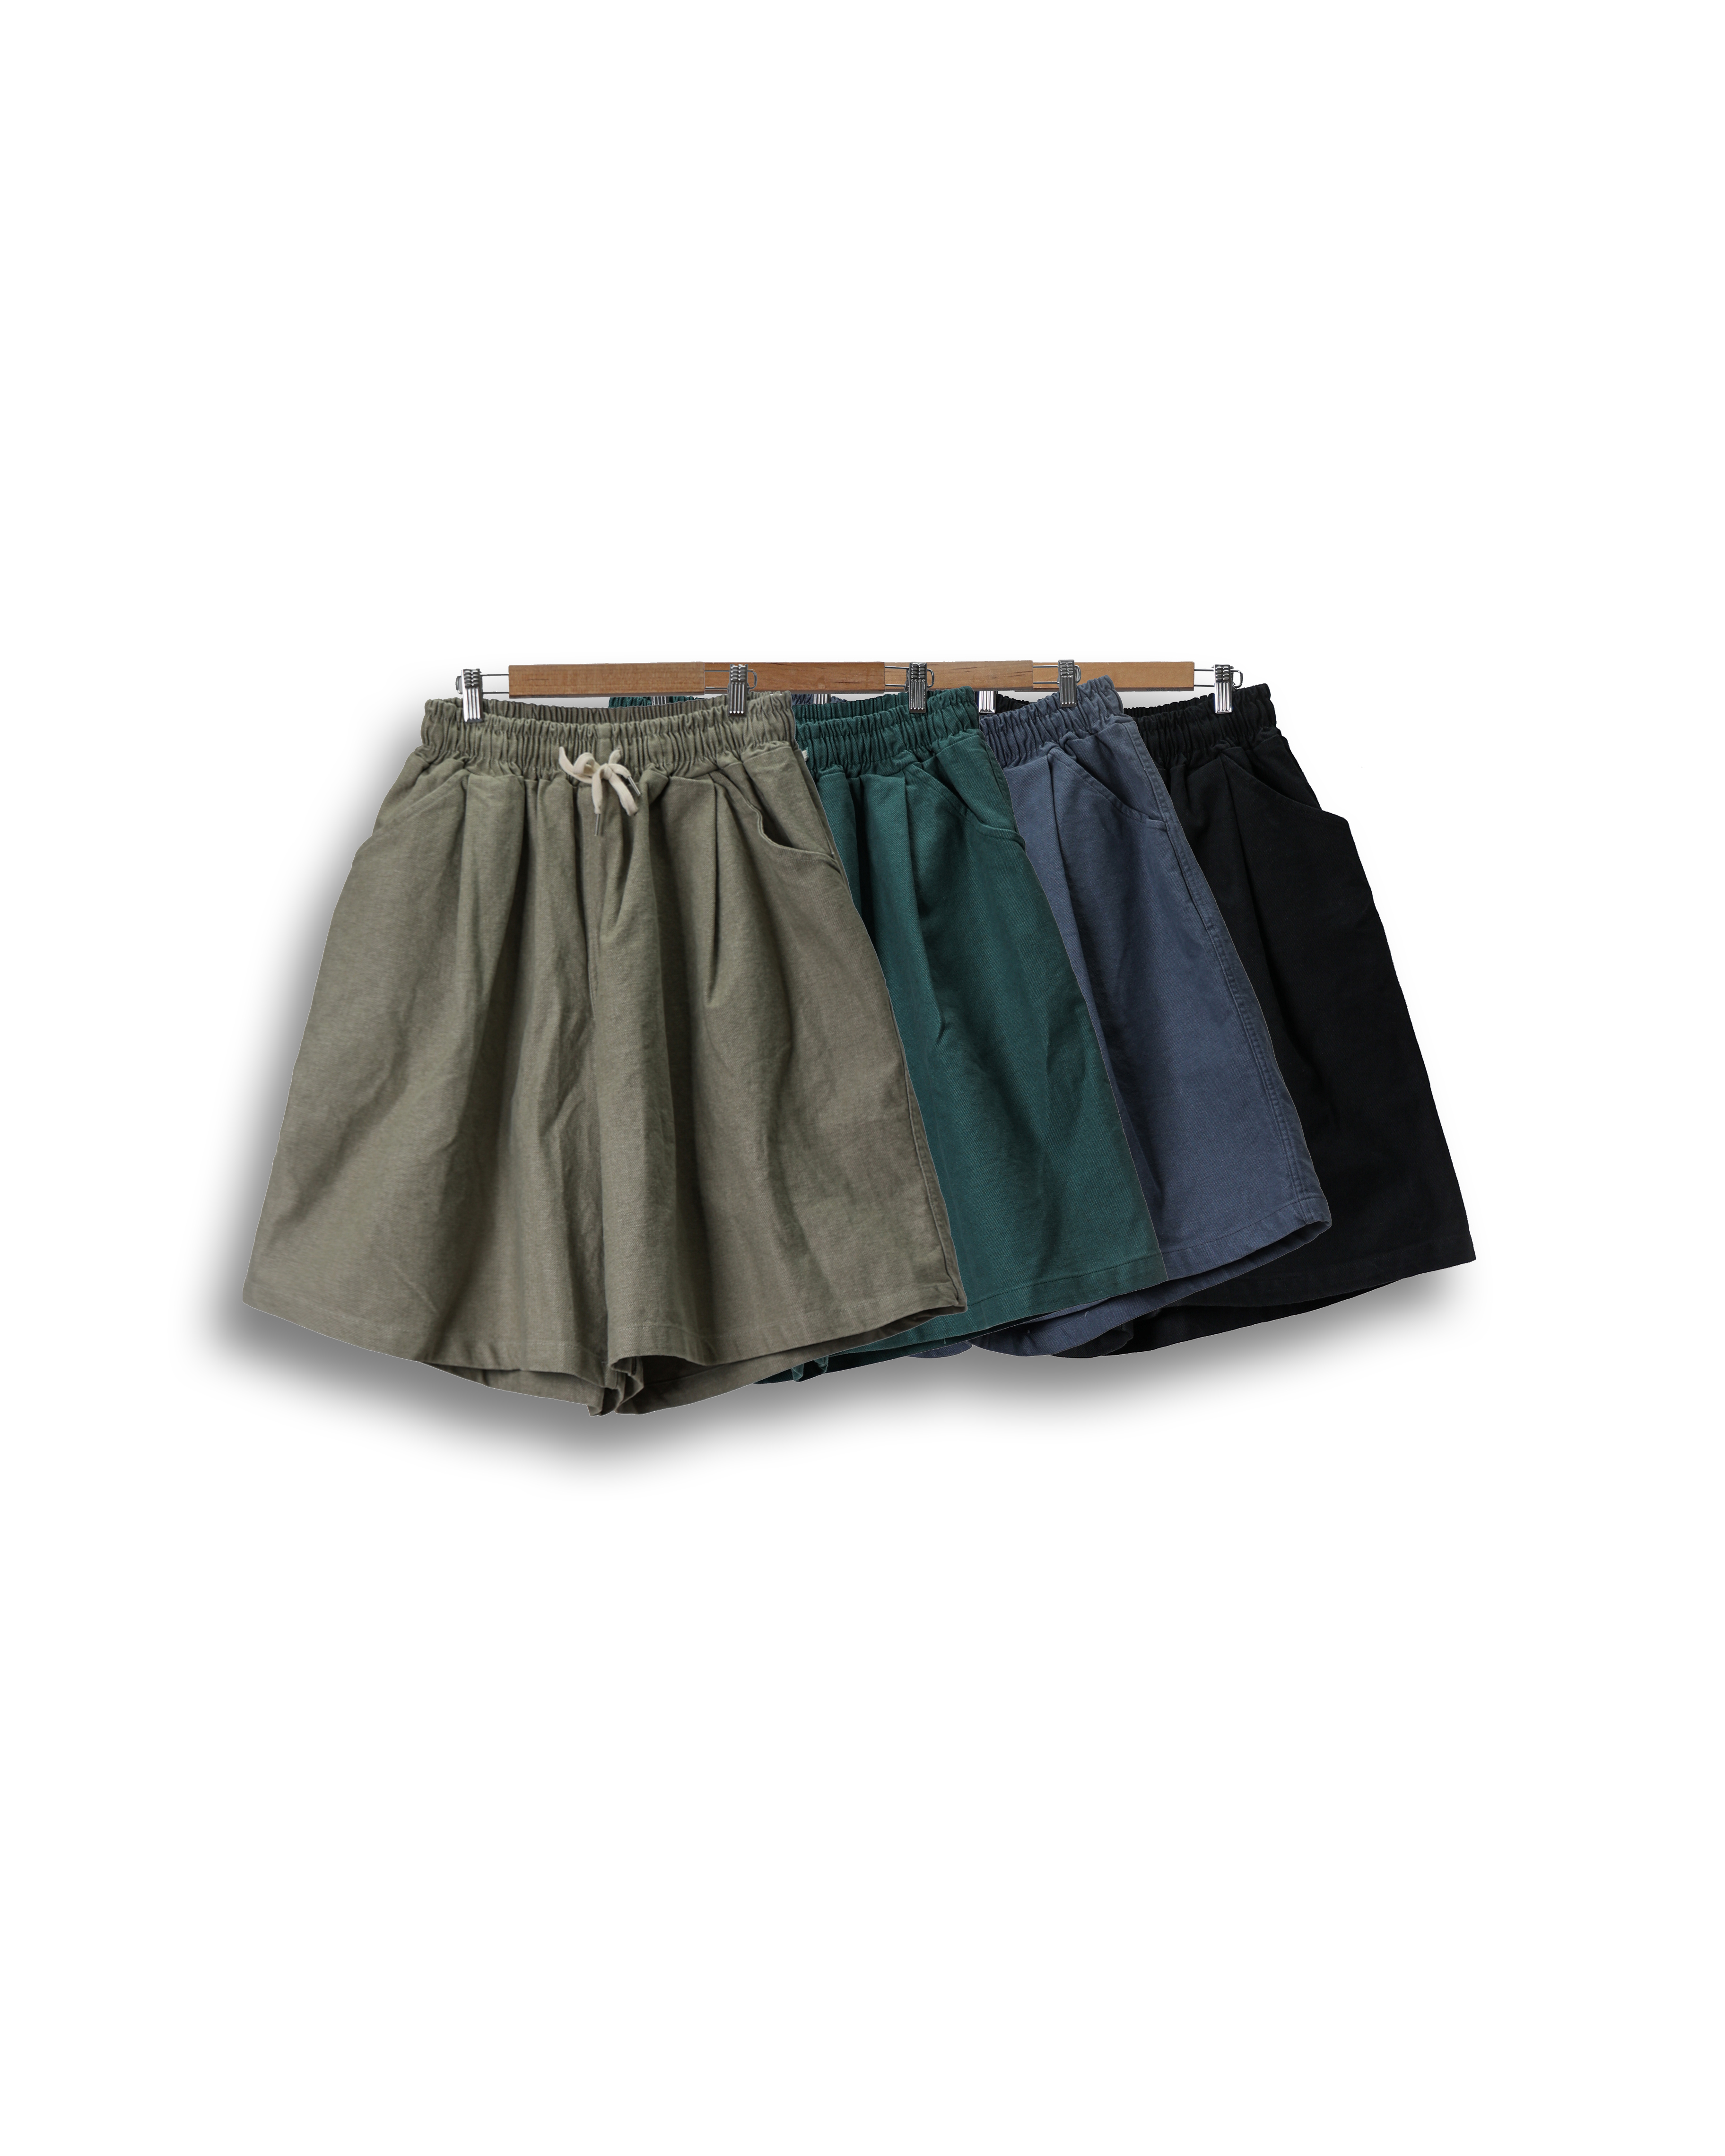 PERCNT Seven Wide Easy Half Pants (Black/Navy/Green/Beige)